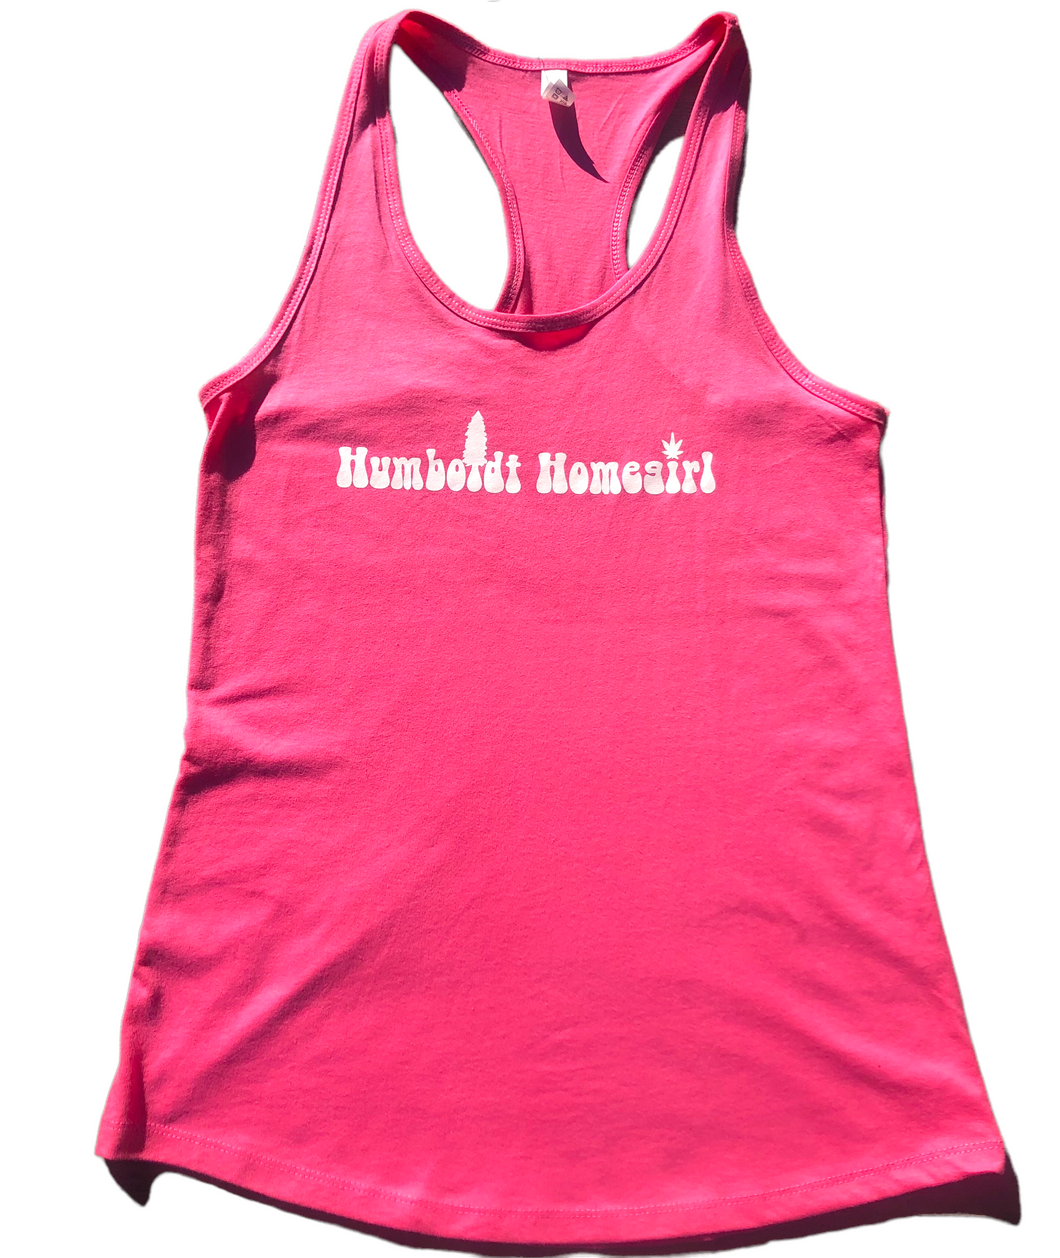 Humboldt Homegirl Hot Pink Tank Top